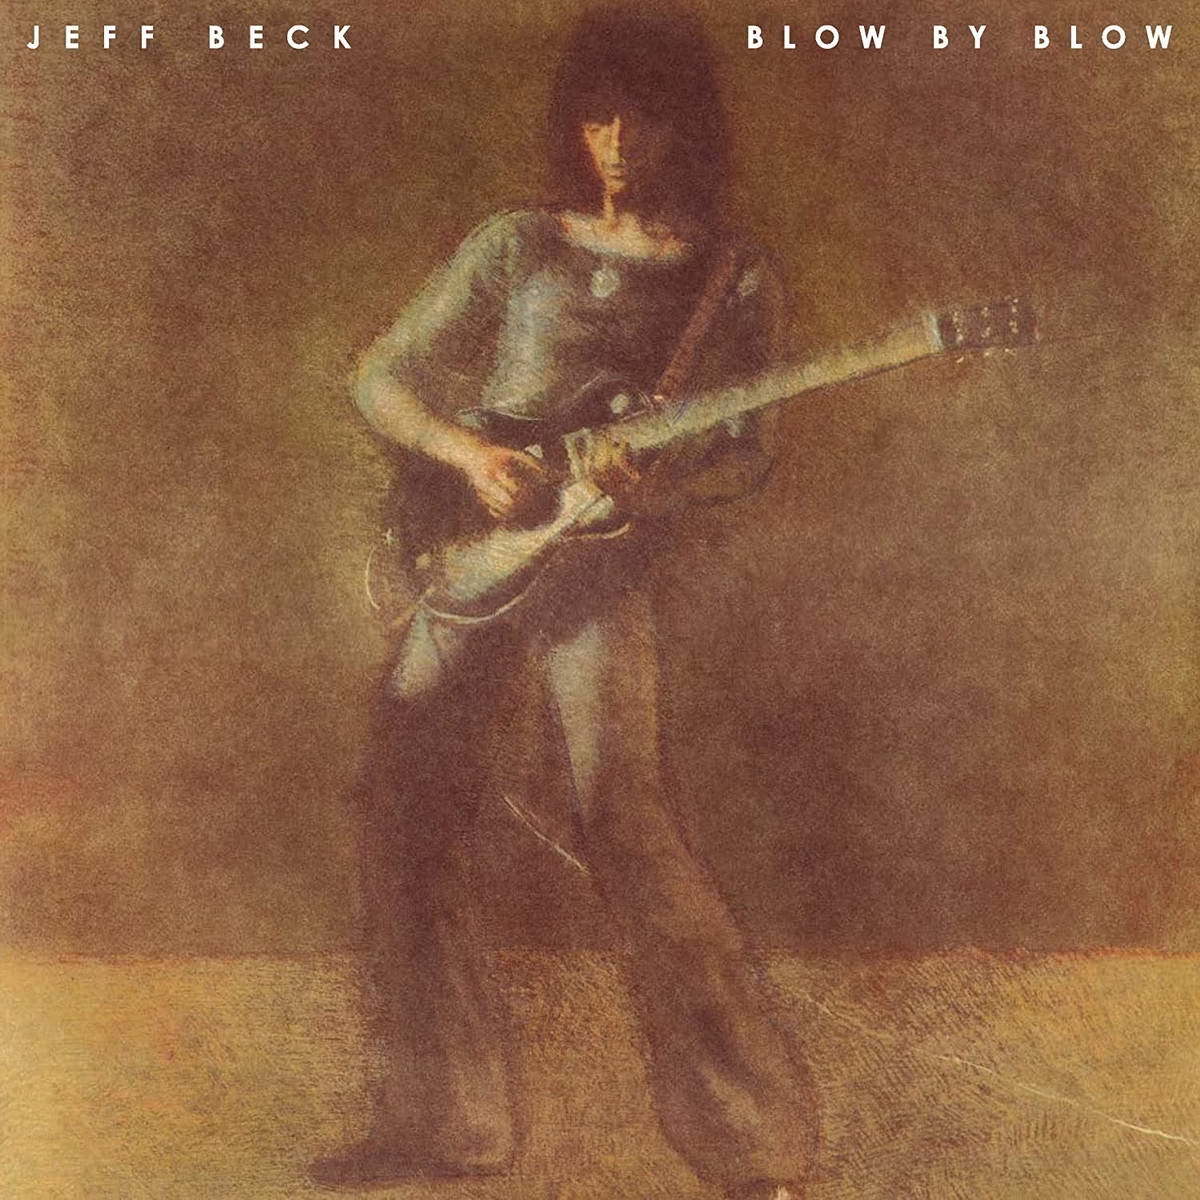 Виниловая пластинка Beck, Jeff, Blow By Blow (0886977455513) виниловая пластинка beck jeff blow by blow 0194397923315